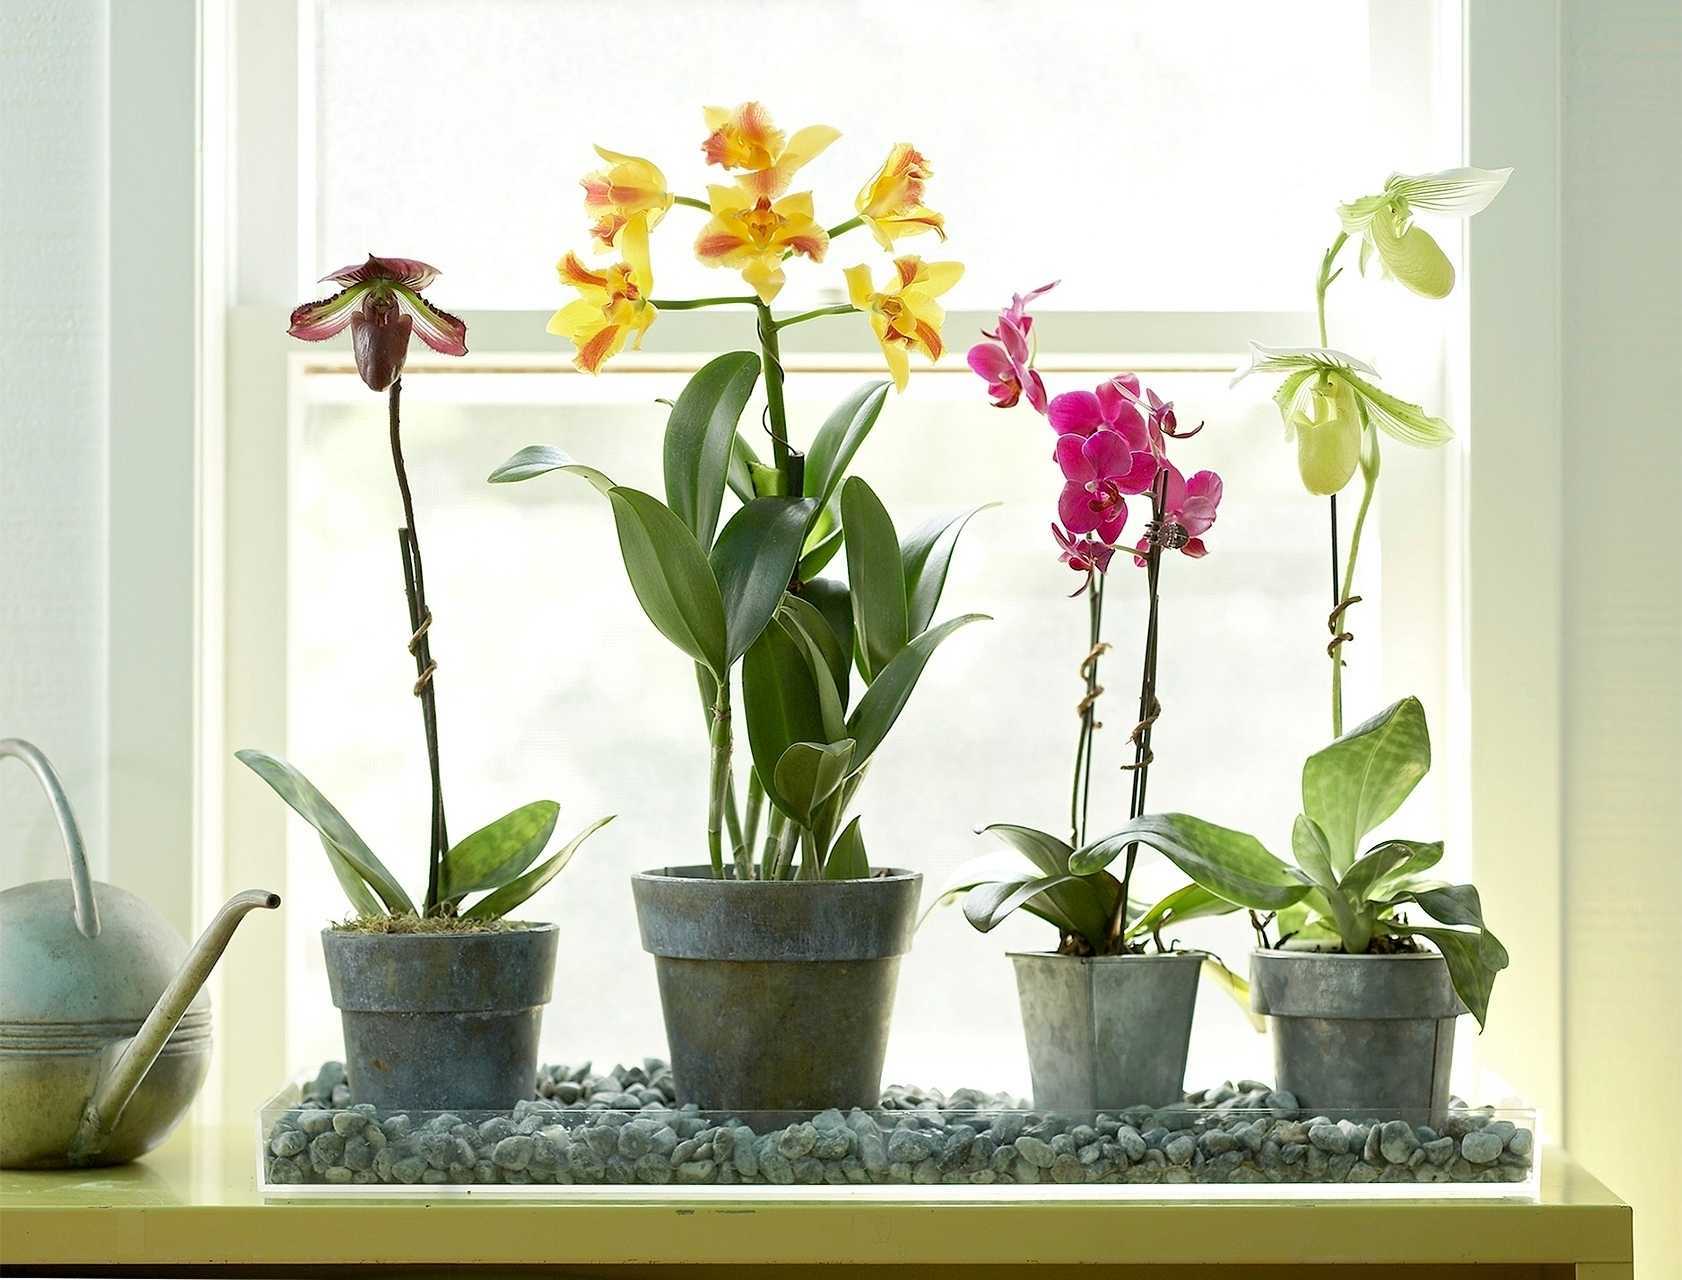 Способы полива орхидей: методом погружения, в закрытой системе и в коре, а также пошаговая инструкция по увлажнению selo.guru — интернет портал о сельском хозяйстве